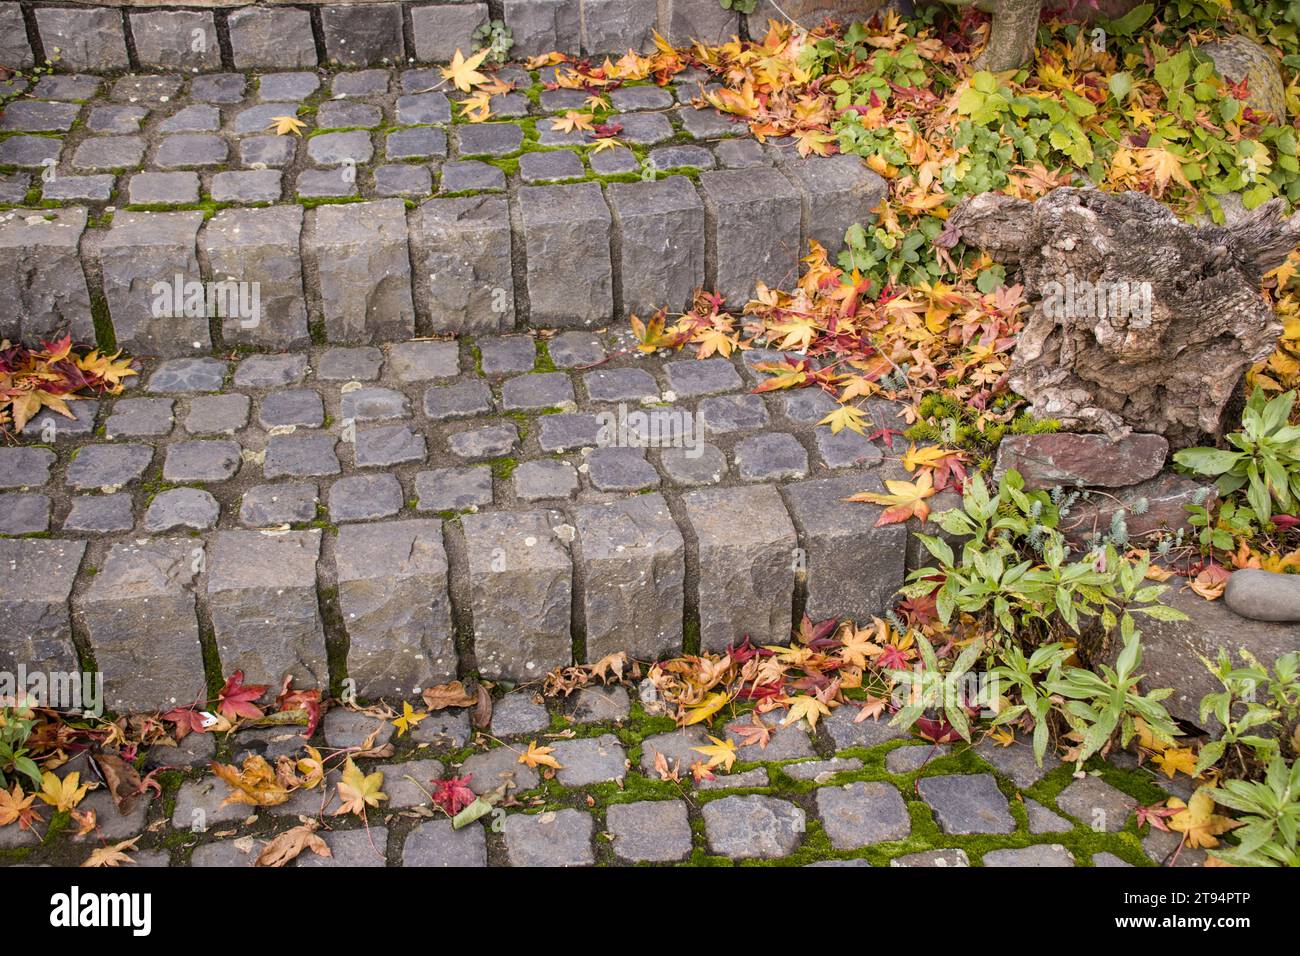 Herbstlaub auf einer Treppe aus Basalt-Pflastersteinen Stock Photo